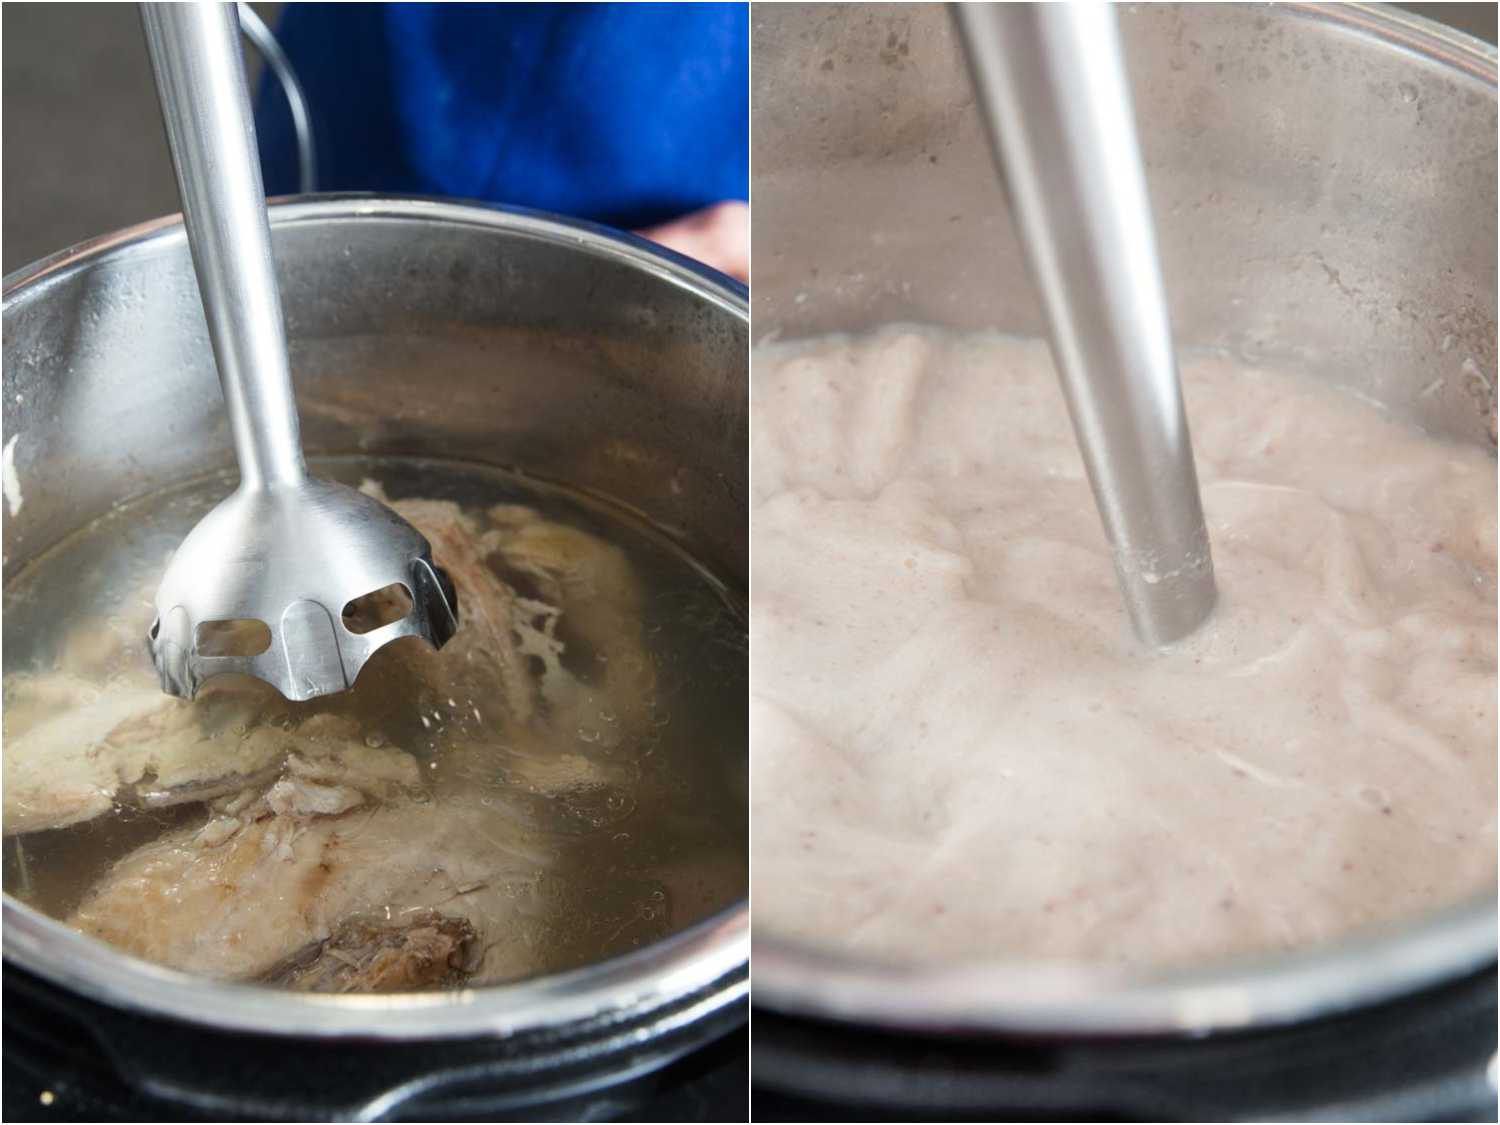 并排的浸入式搅拌器被淹没在压力烹饪鸡汤和浸入式搅拌器混合肉汤。